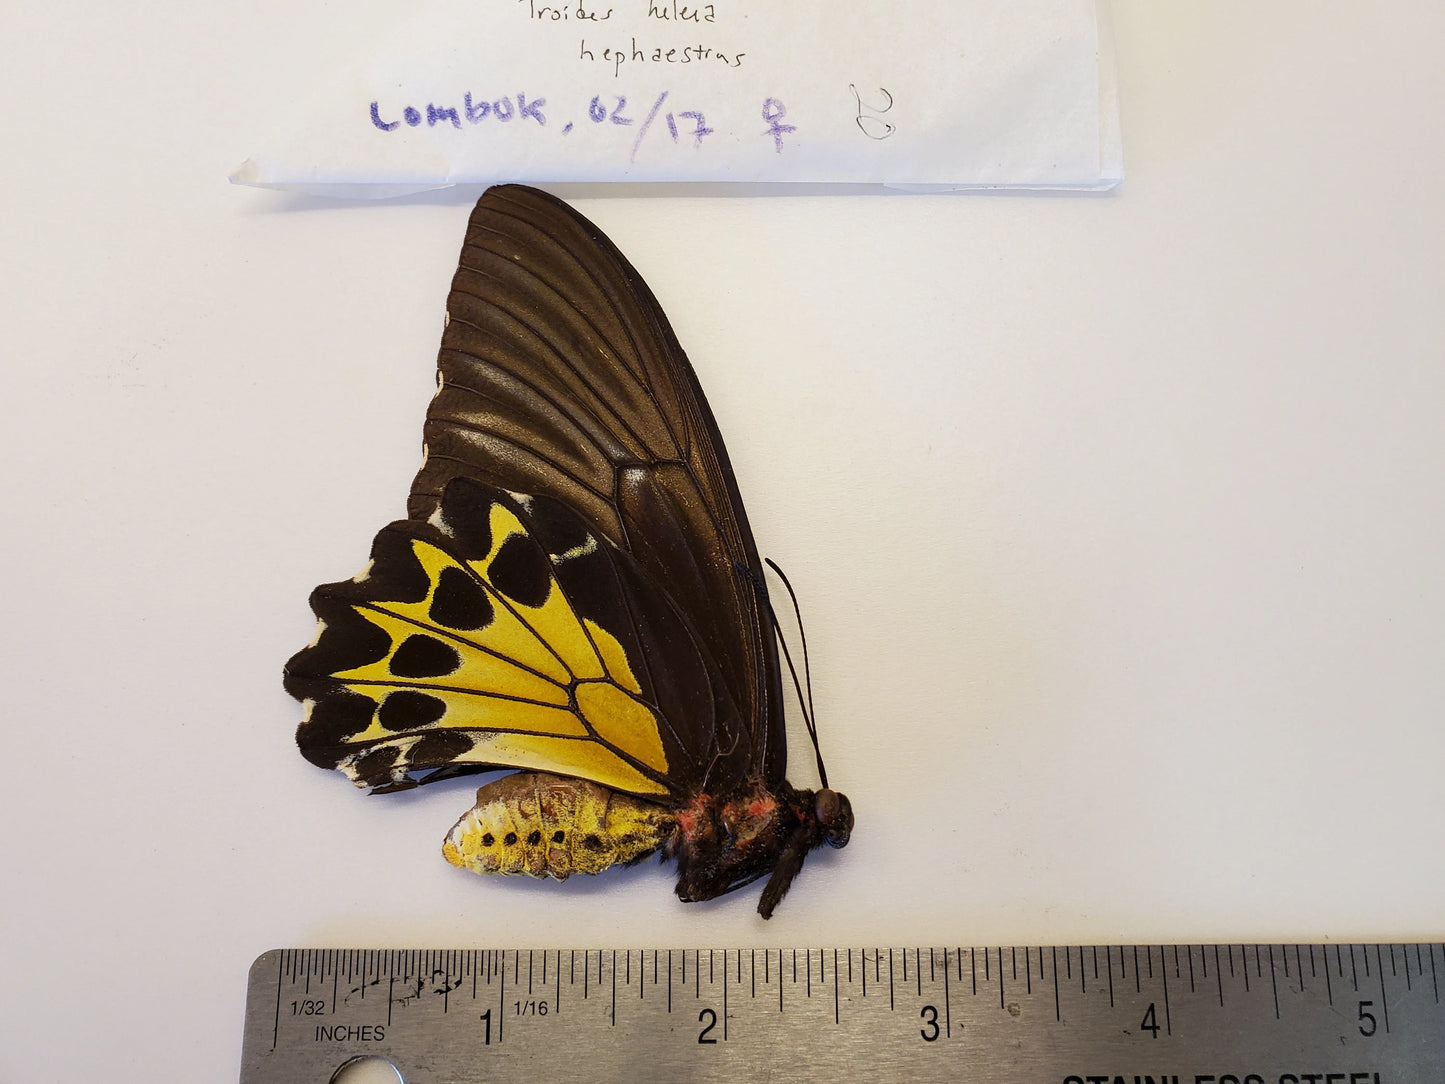 Birdwing Butterfly 'Troides helena hephaestrus' Lombak Is.